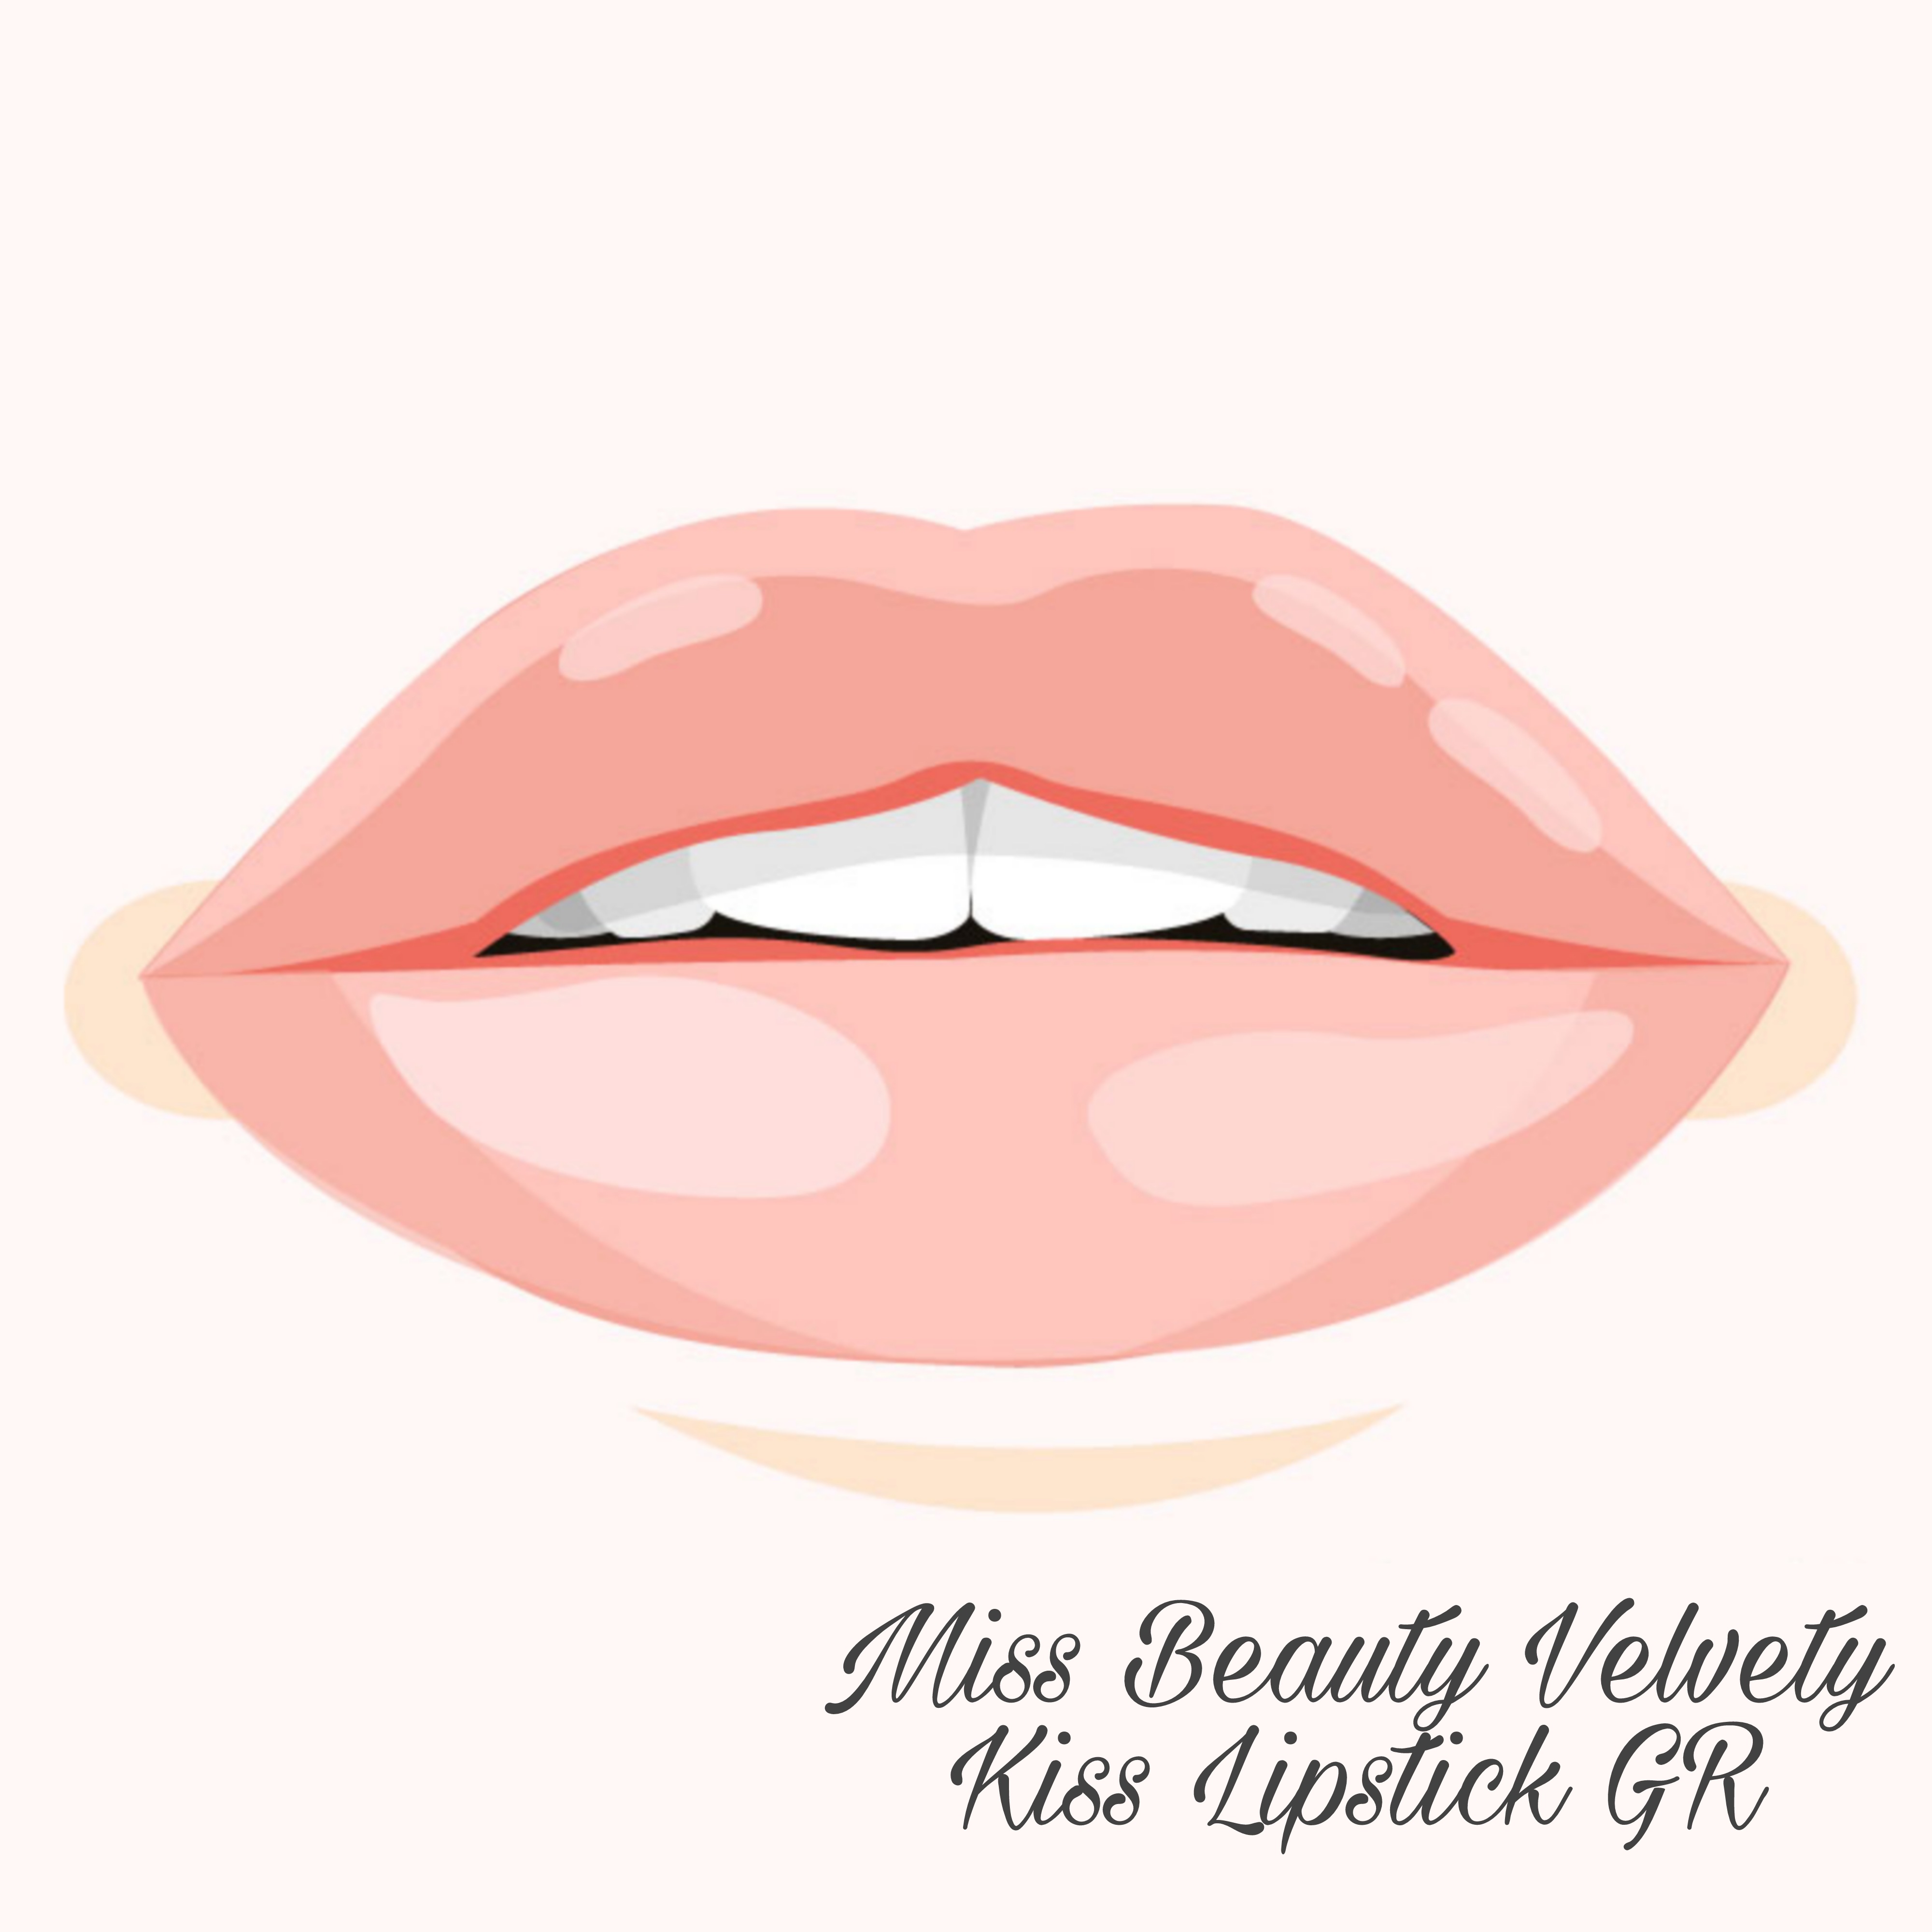 Miss Beauty Velvety Kiss Lipstick GR